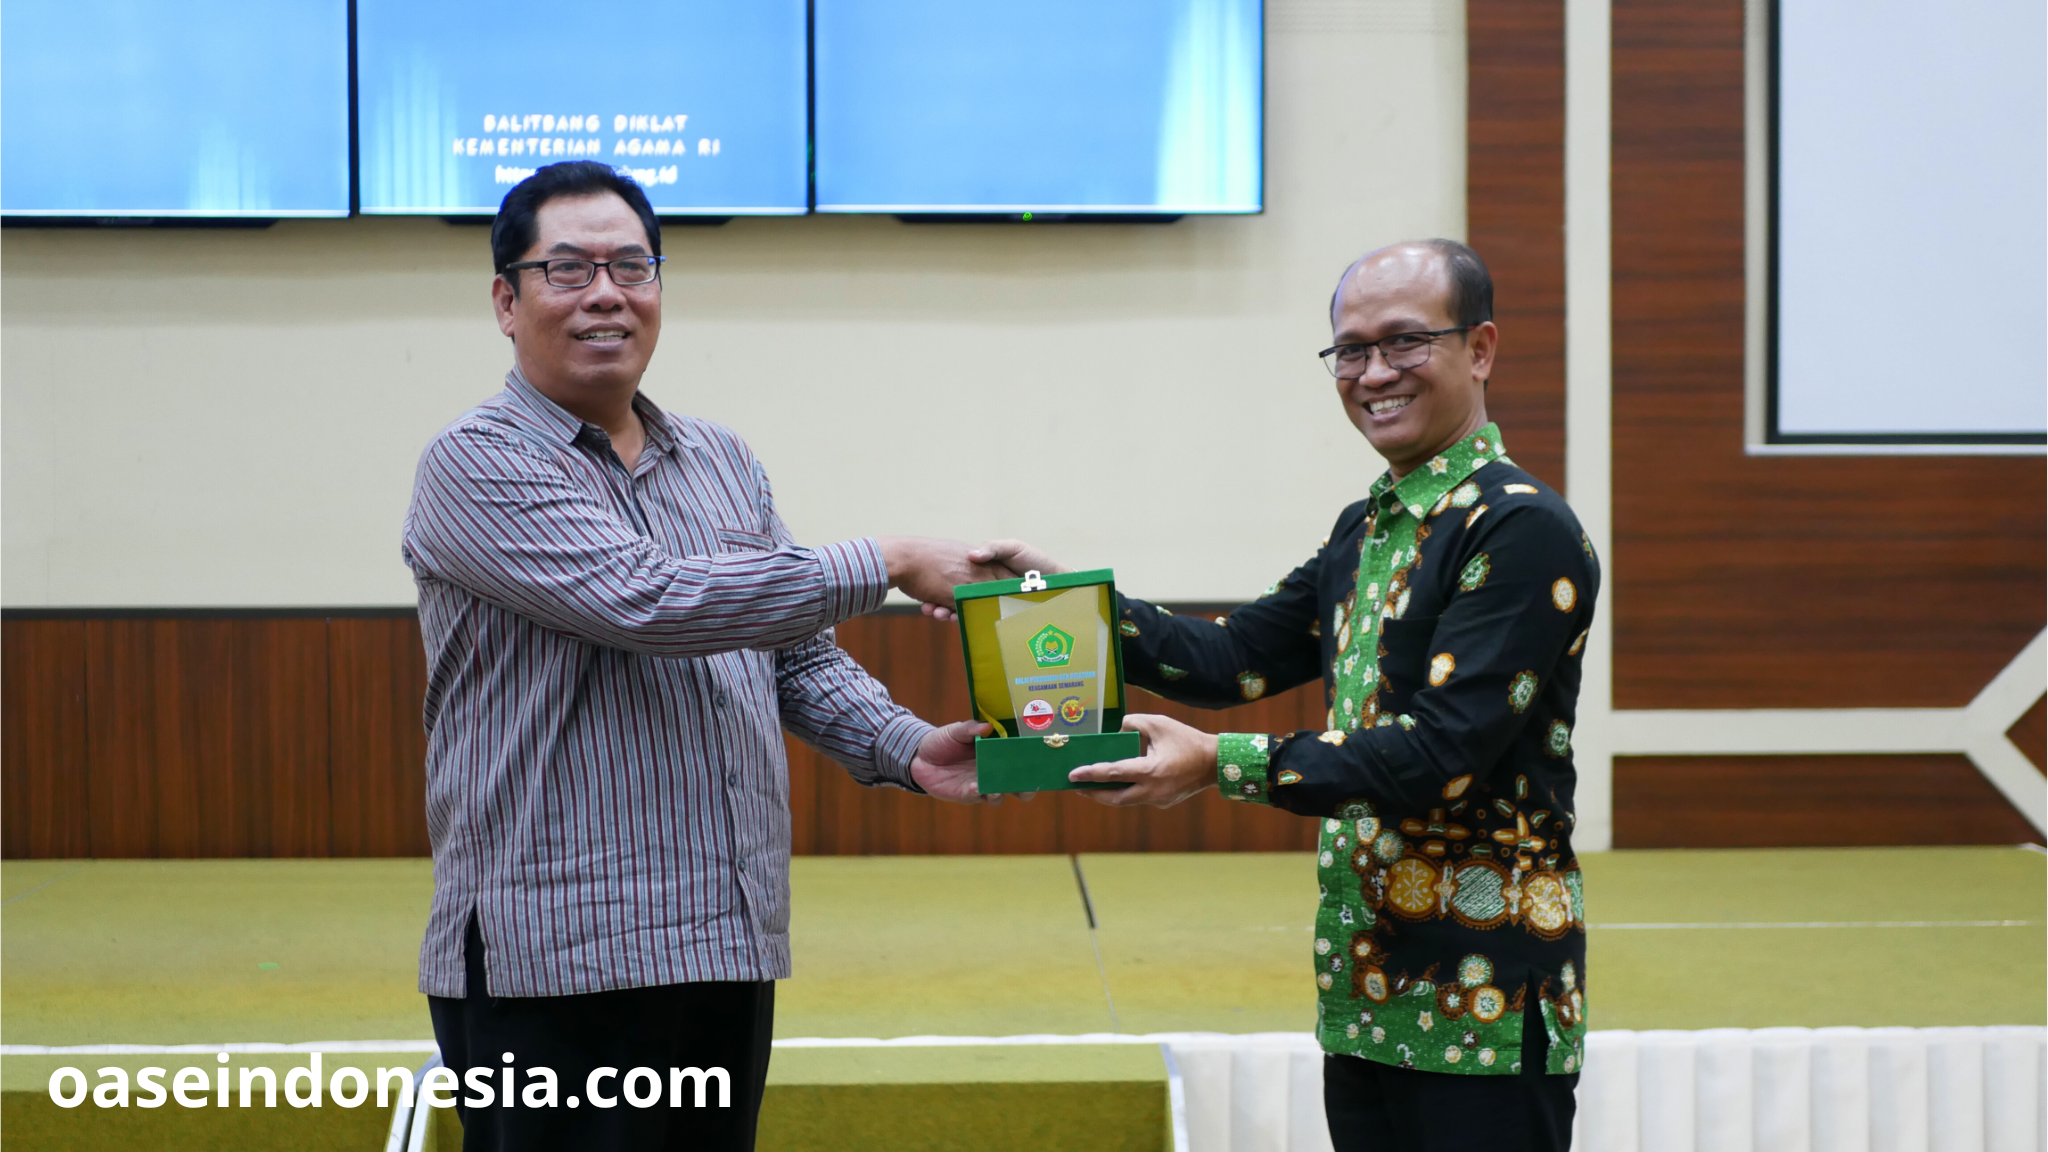 Kepala BDK Semarang memberikan simbolis kepada Kepala BDK Bandung